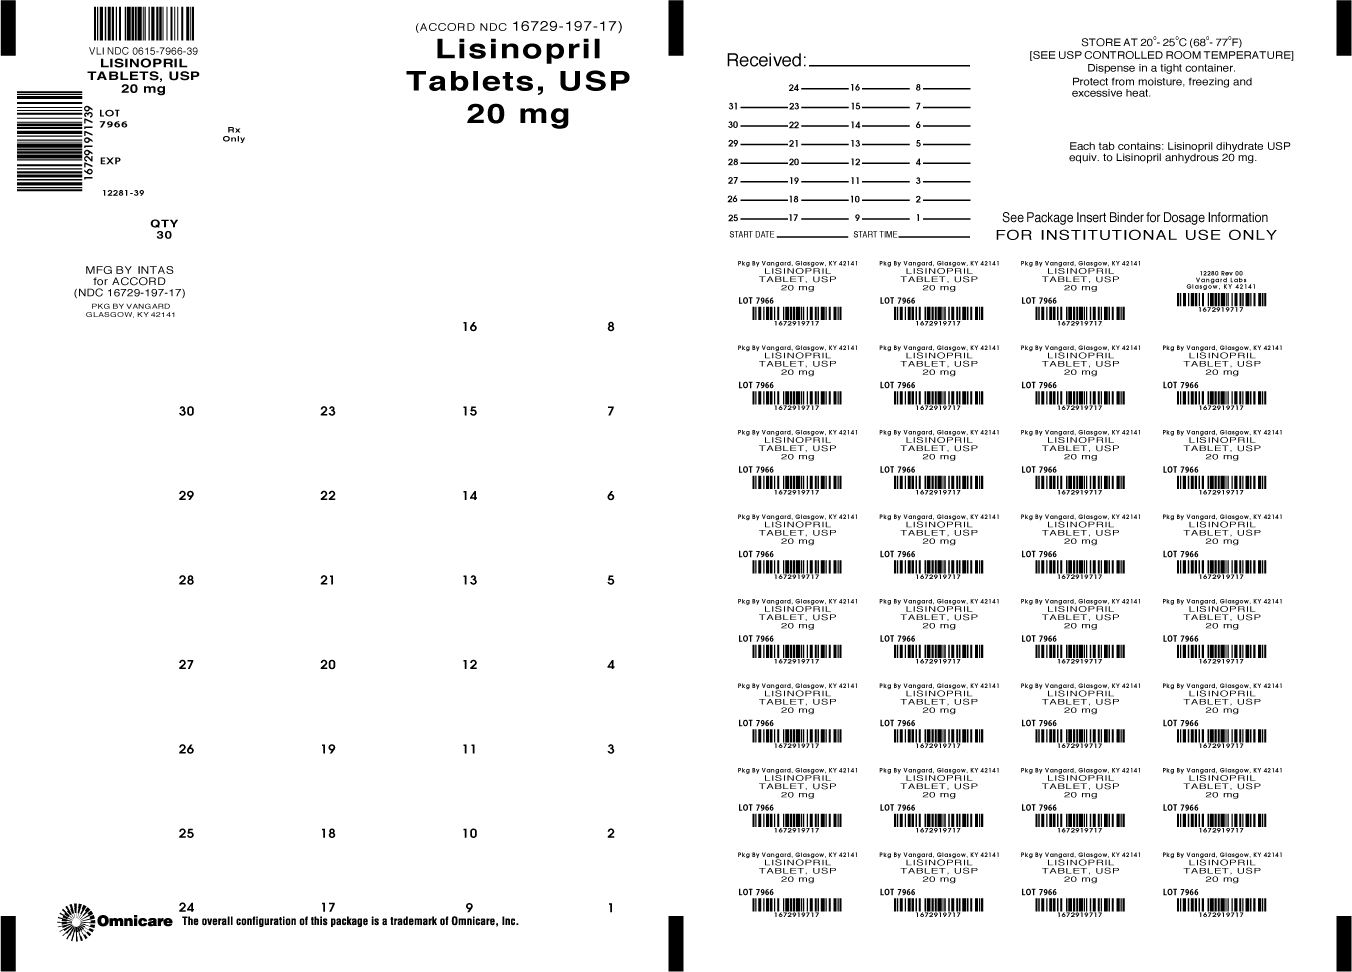 Lisinopril 20mg bingo card label